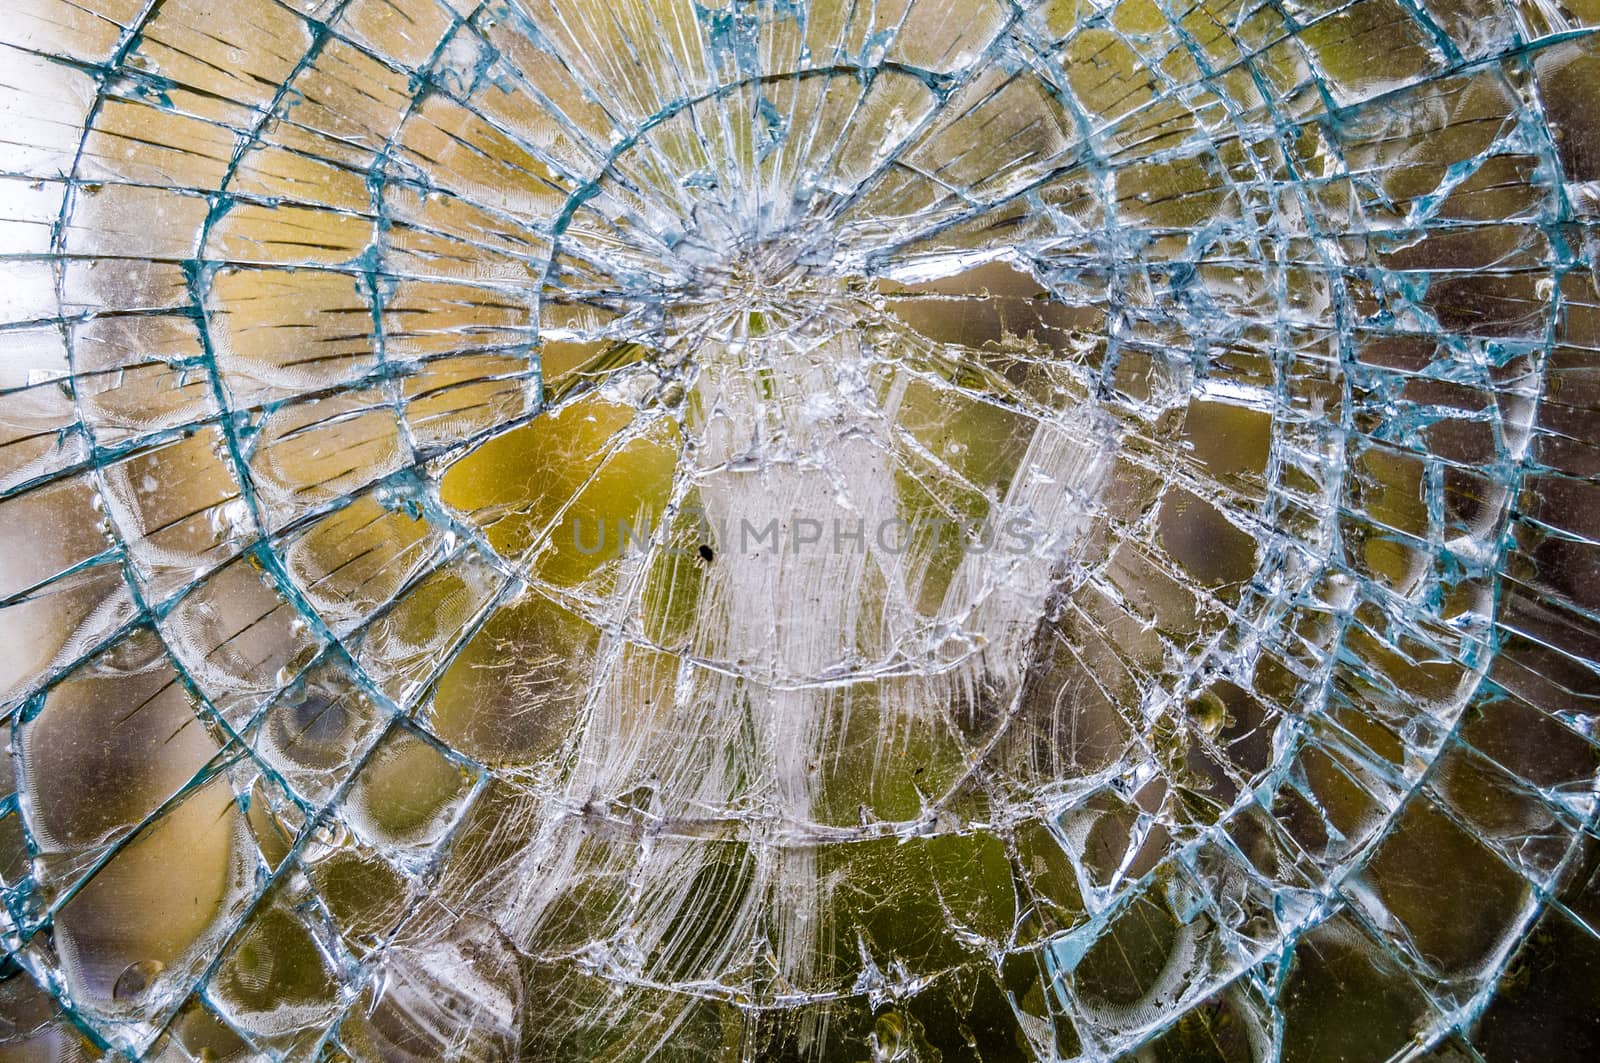 Broken glass by Jule_Berlin